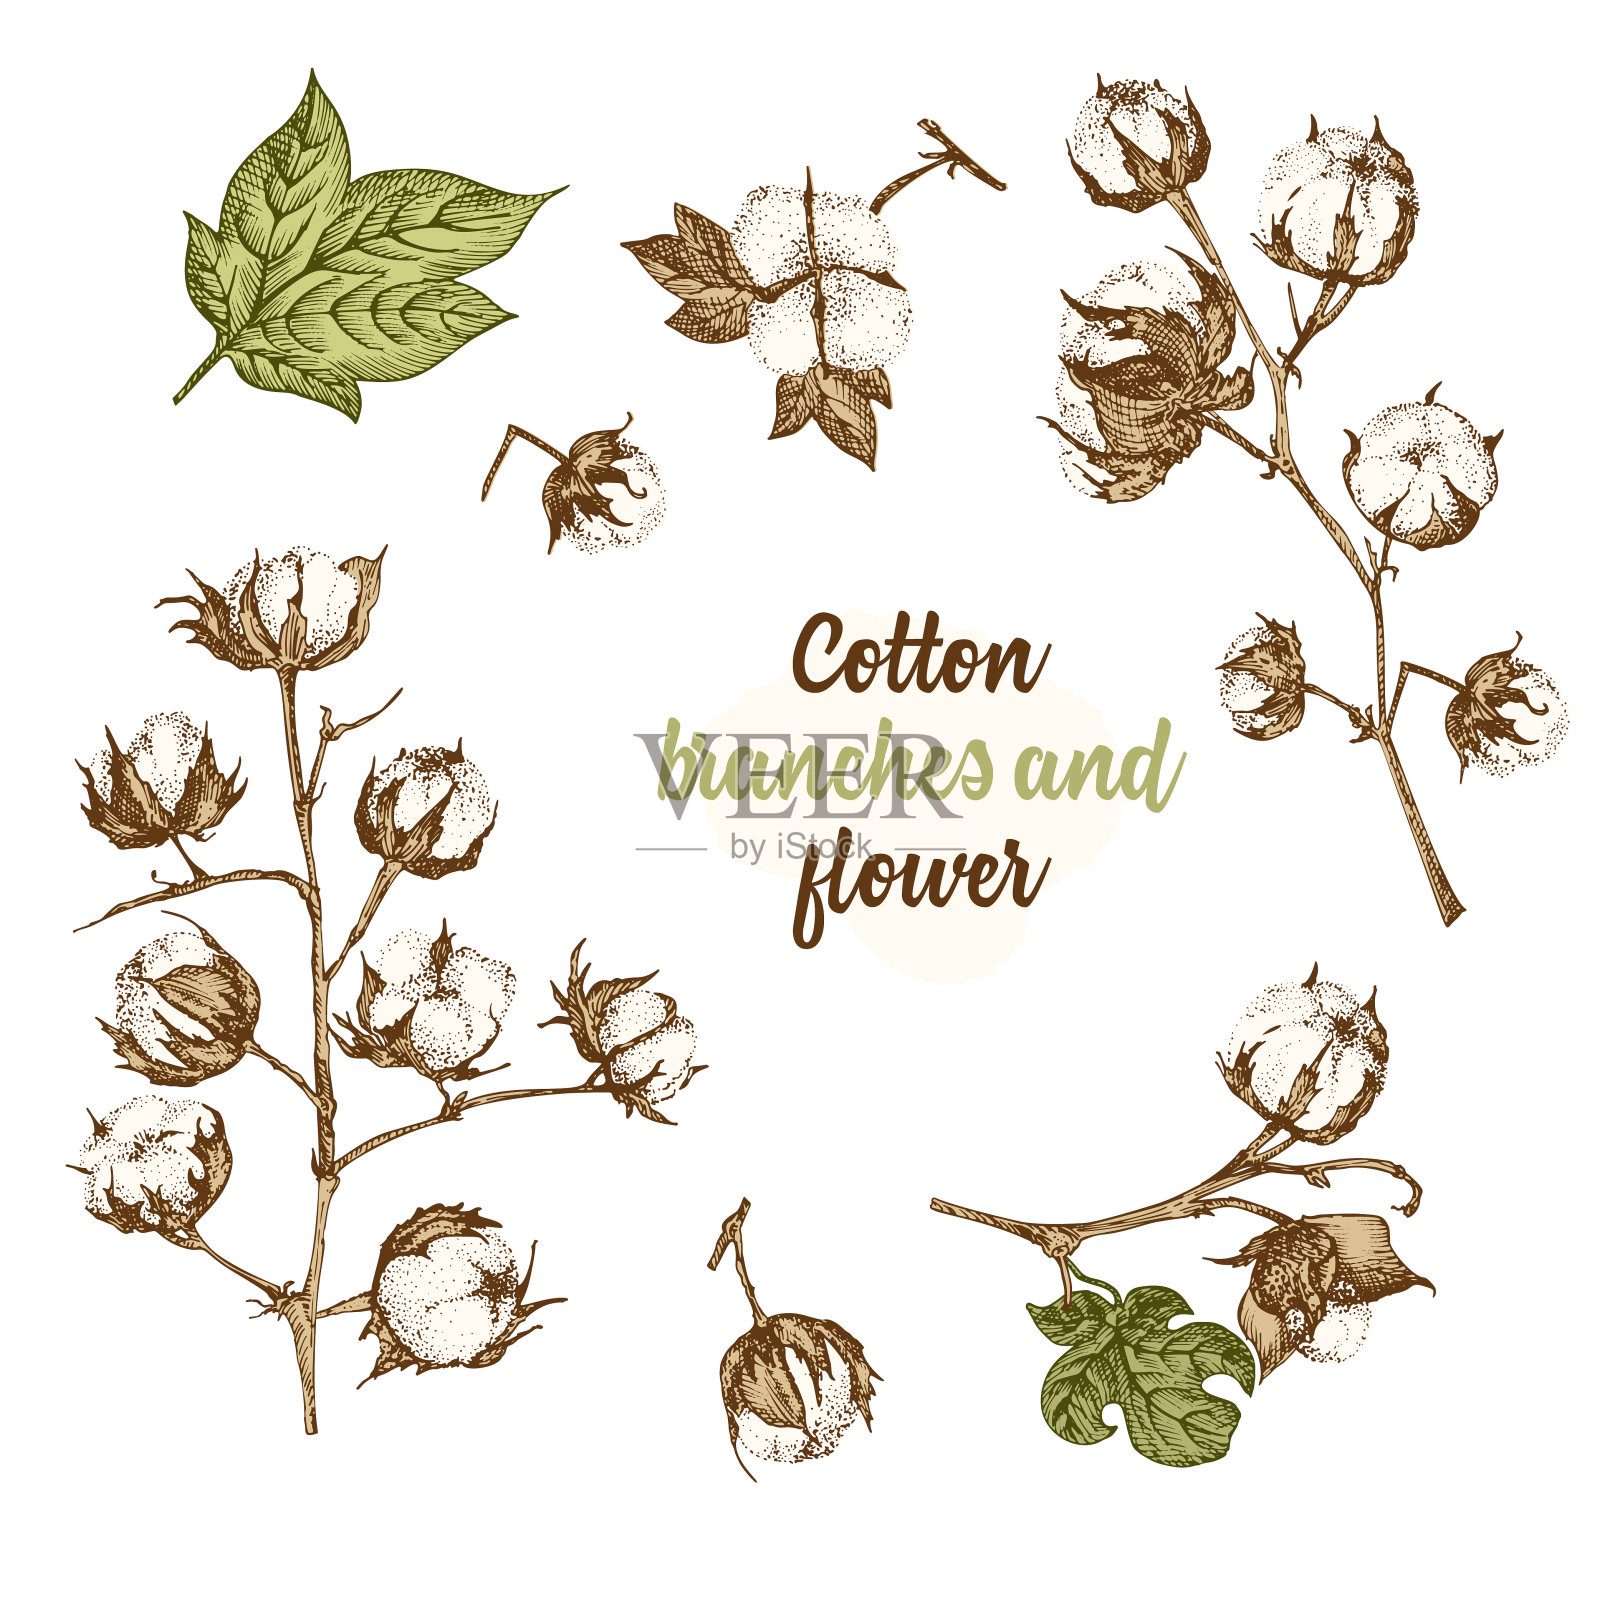 一组棉花植物的细枝、花和叶。手绘素描植物插图。雕刻风格。平的彩色插图。插画图片素材